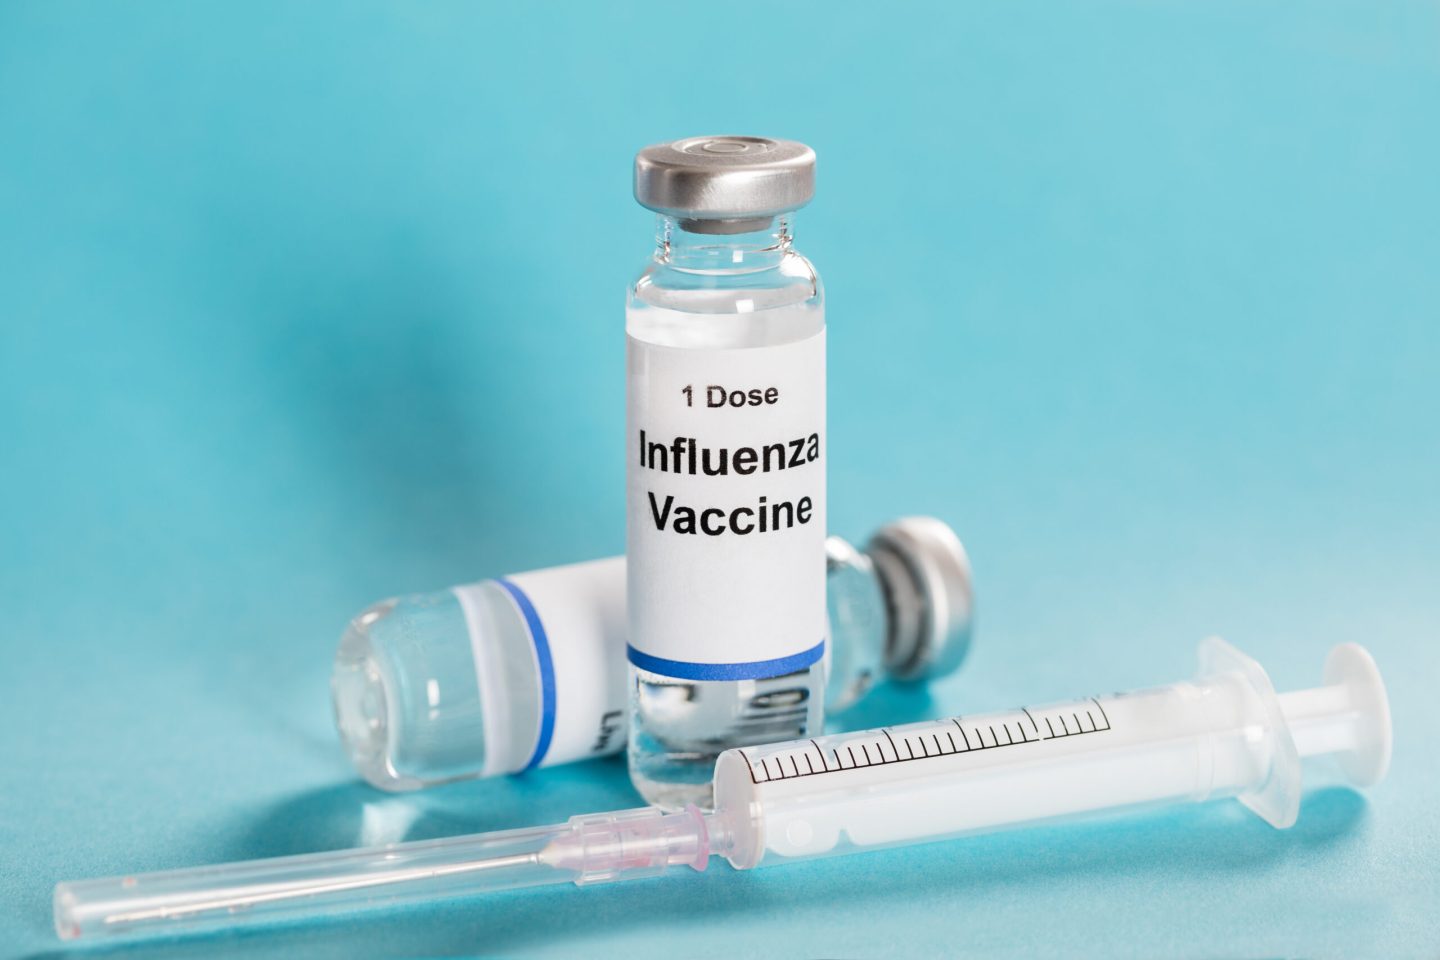 لقاح الإنفلونزا: لمن يُعطى؟ ومتى يجب أخذه؟ وما مضاعفاته الجانبية؟